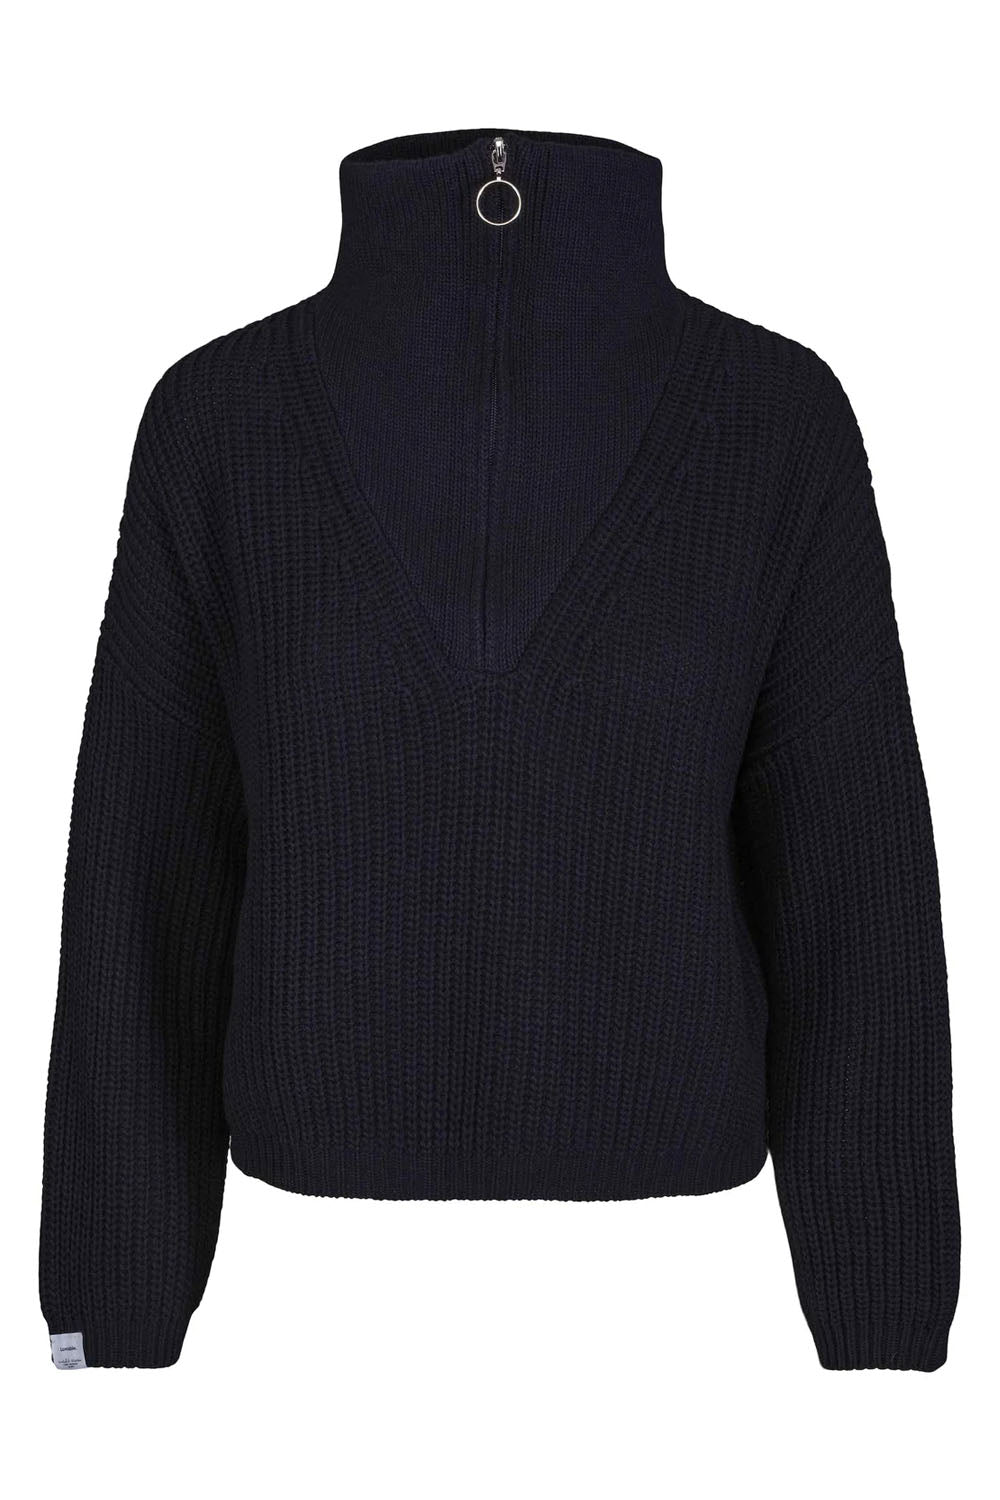 Florie Cotton Zip Knit Sweater Dark Navy